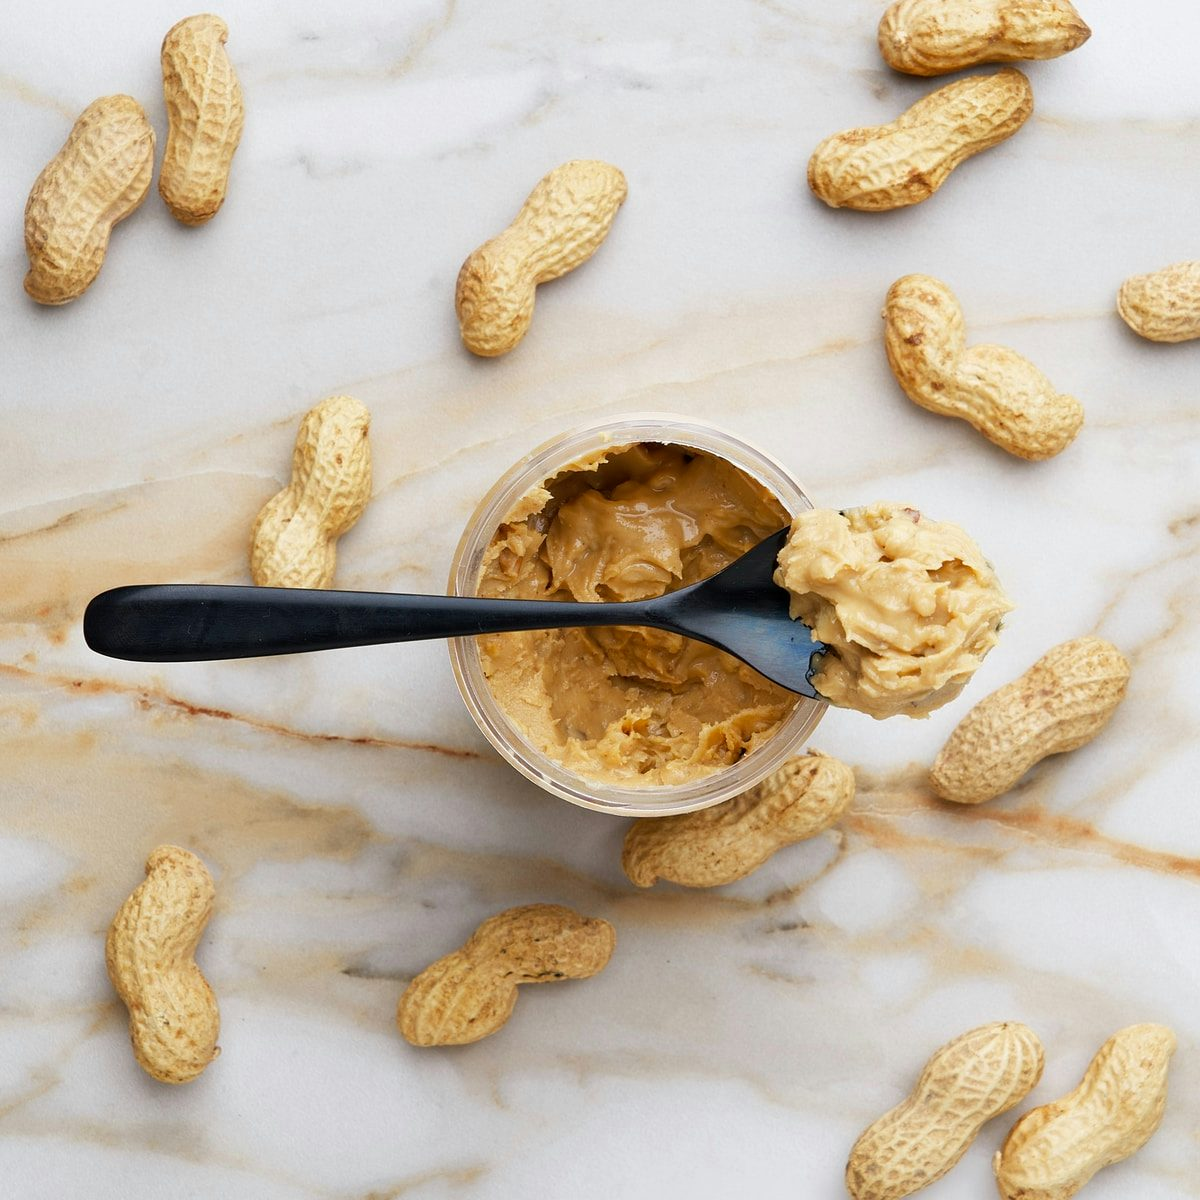 Peanut butter homogenization